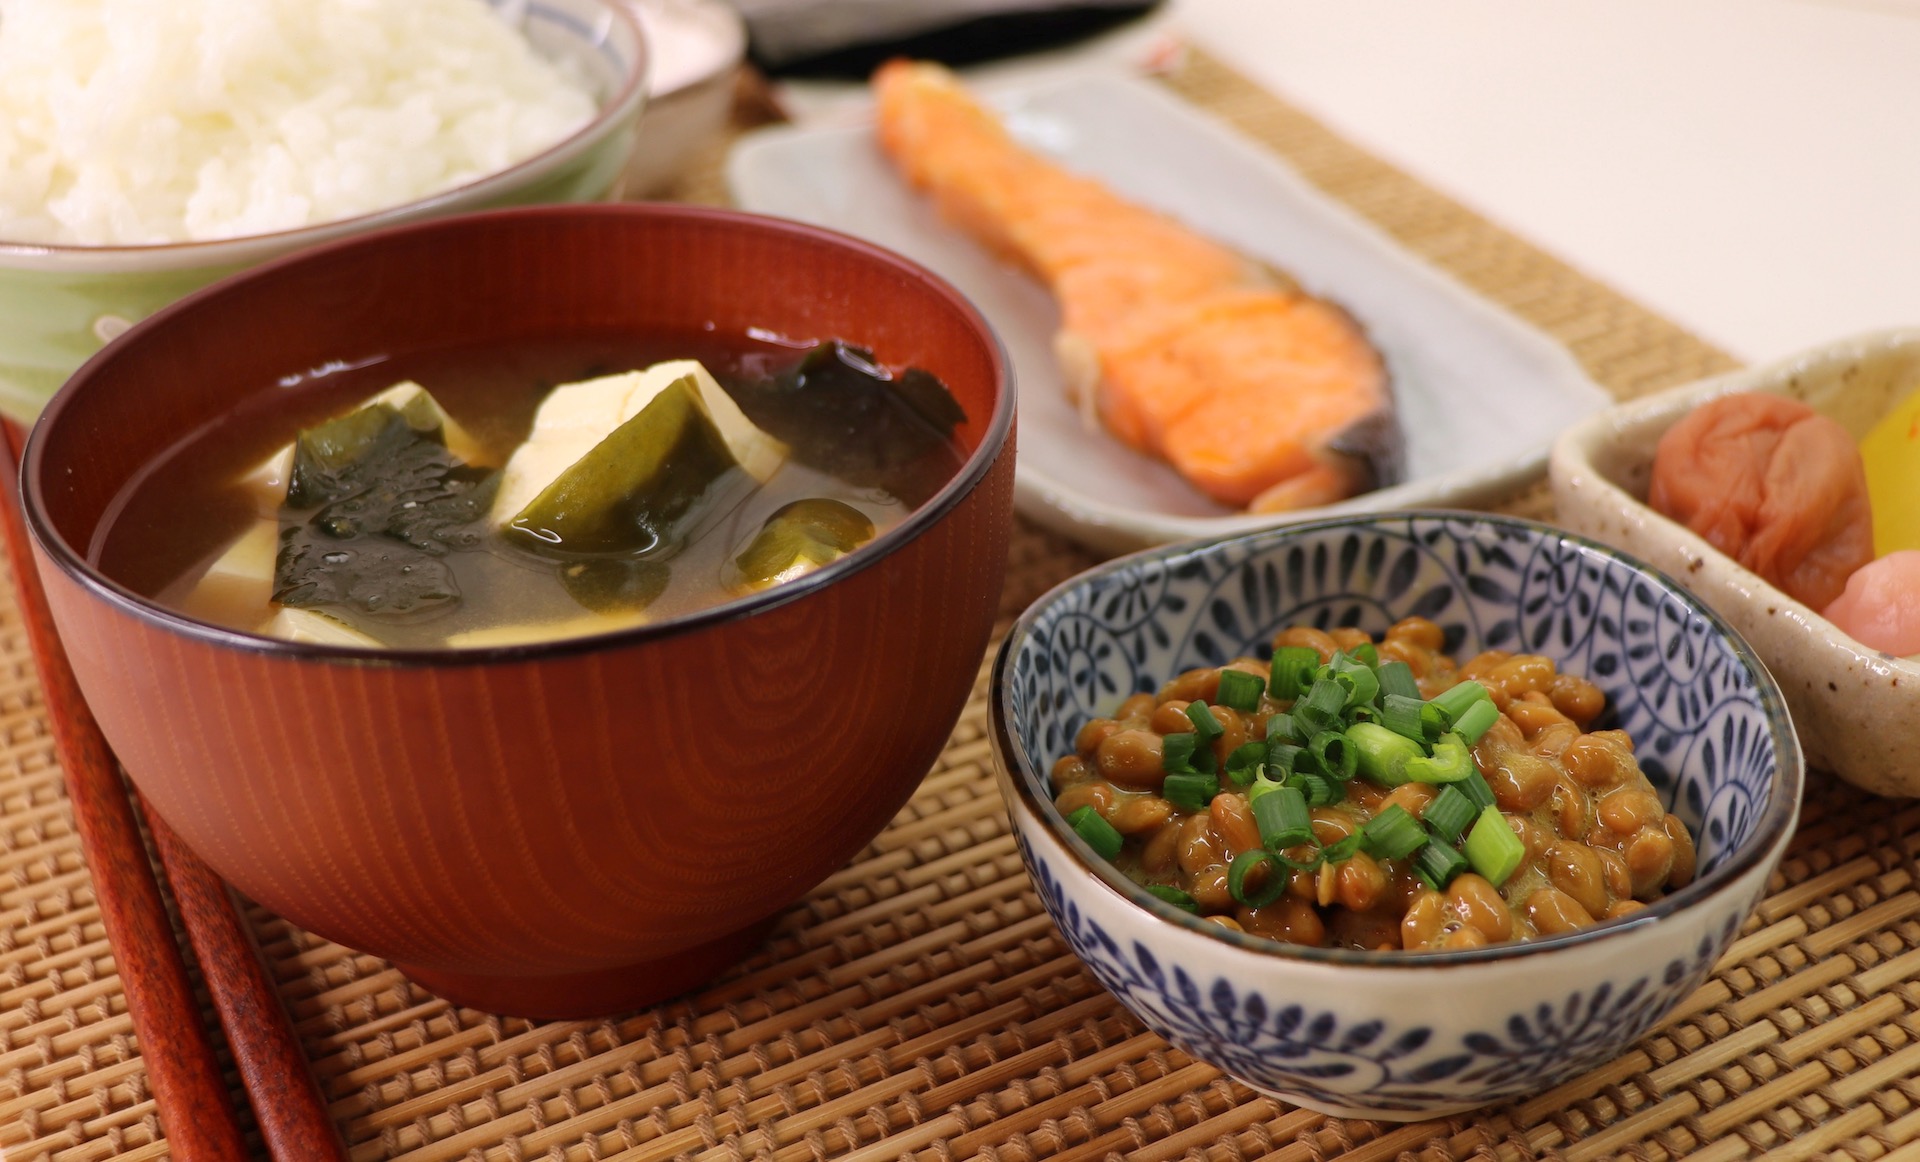 Суп на завтрак у японцев 4 буквы. Натто (традиционная японская еда из сброженных соевых бобов). Японский завтрак. Японский суп для завтрака. Национальное японское блюдо консервированные Бобы.